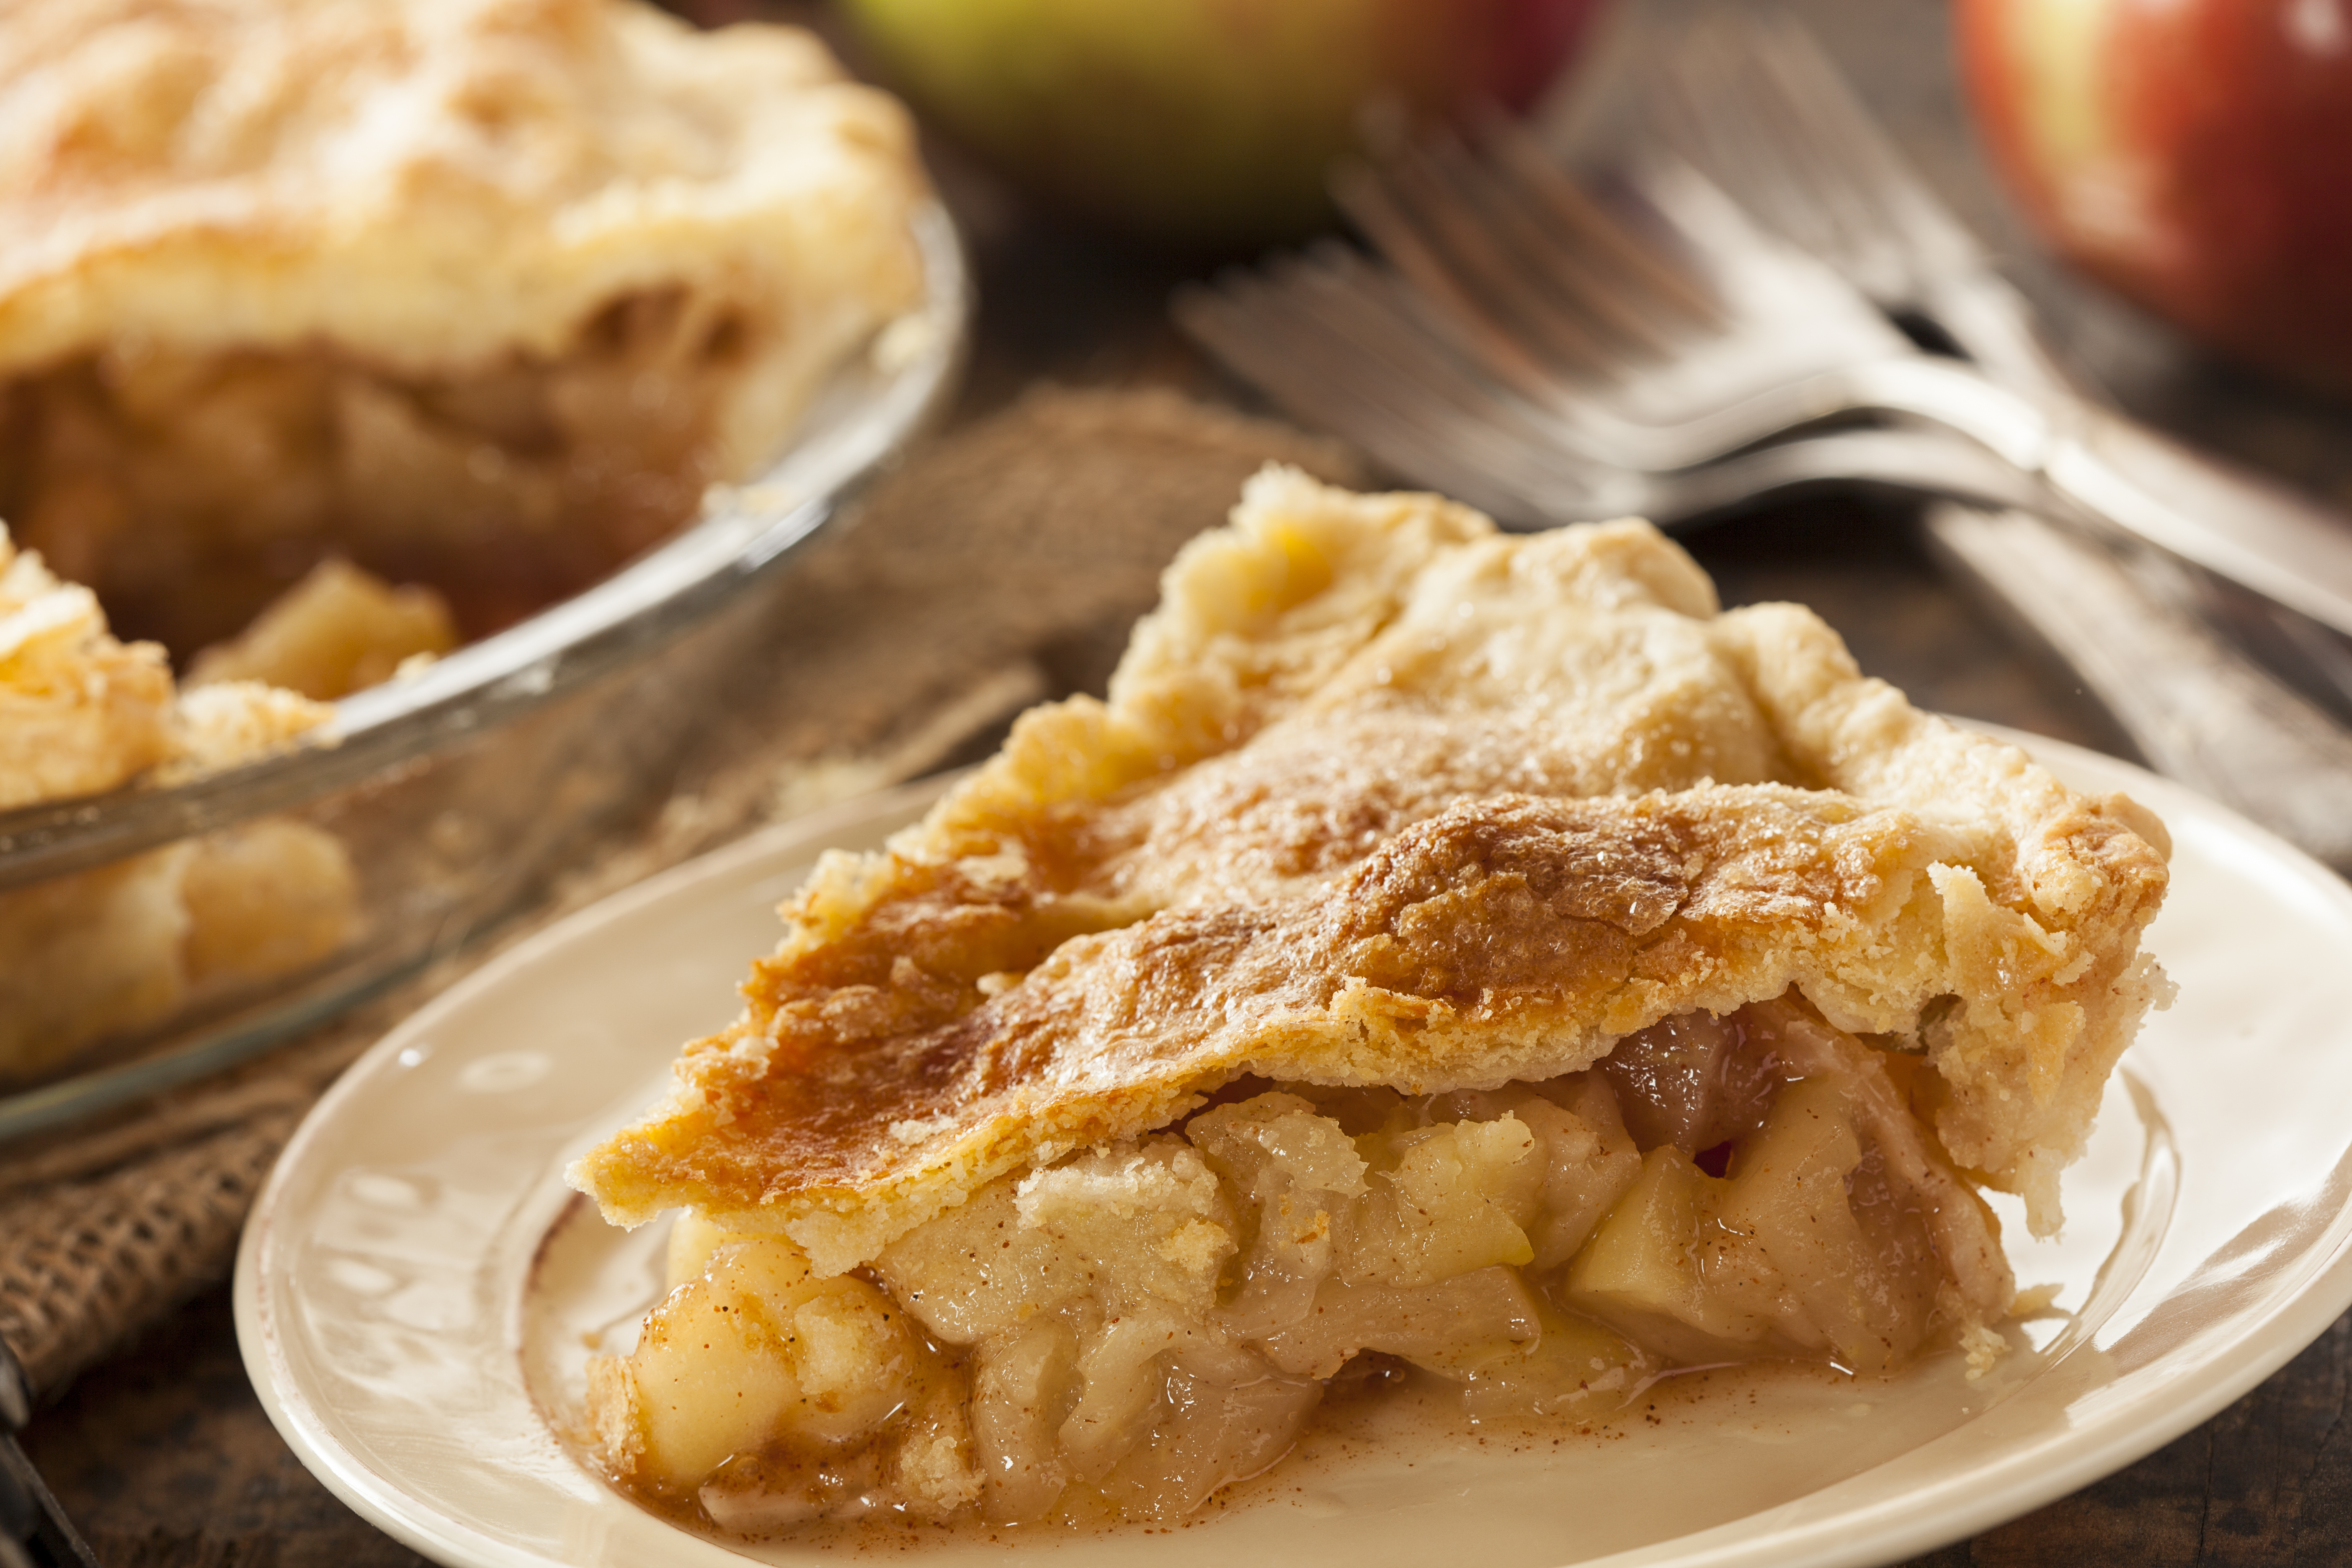 Apple Pie is always amazing